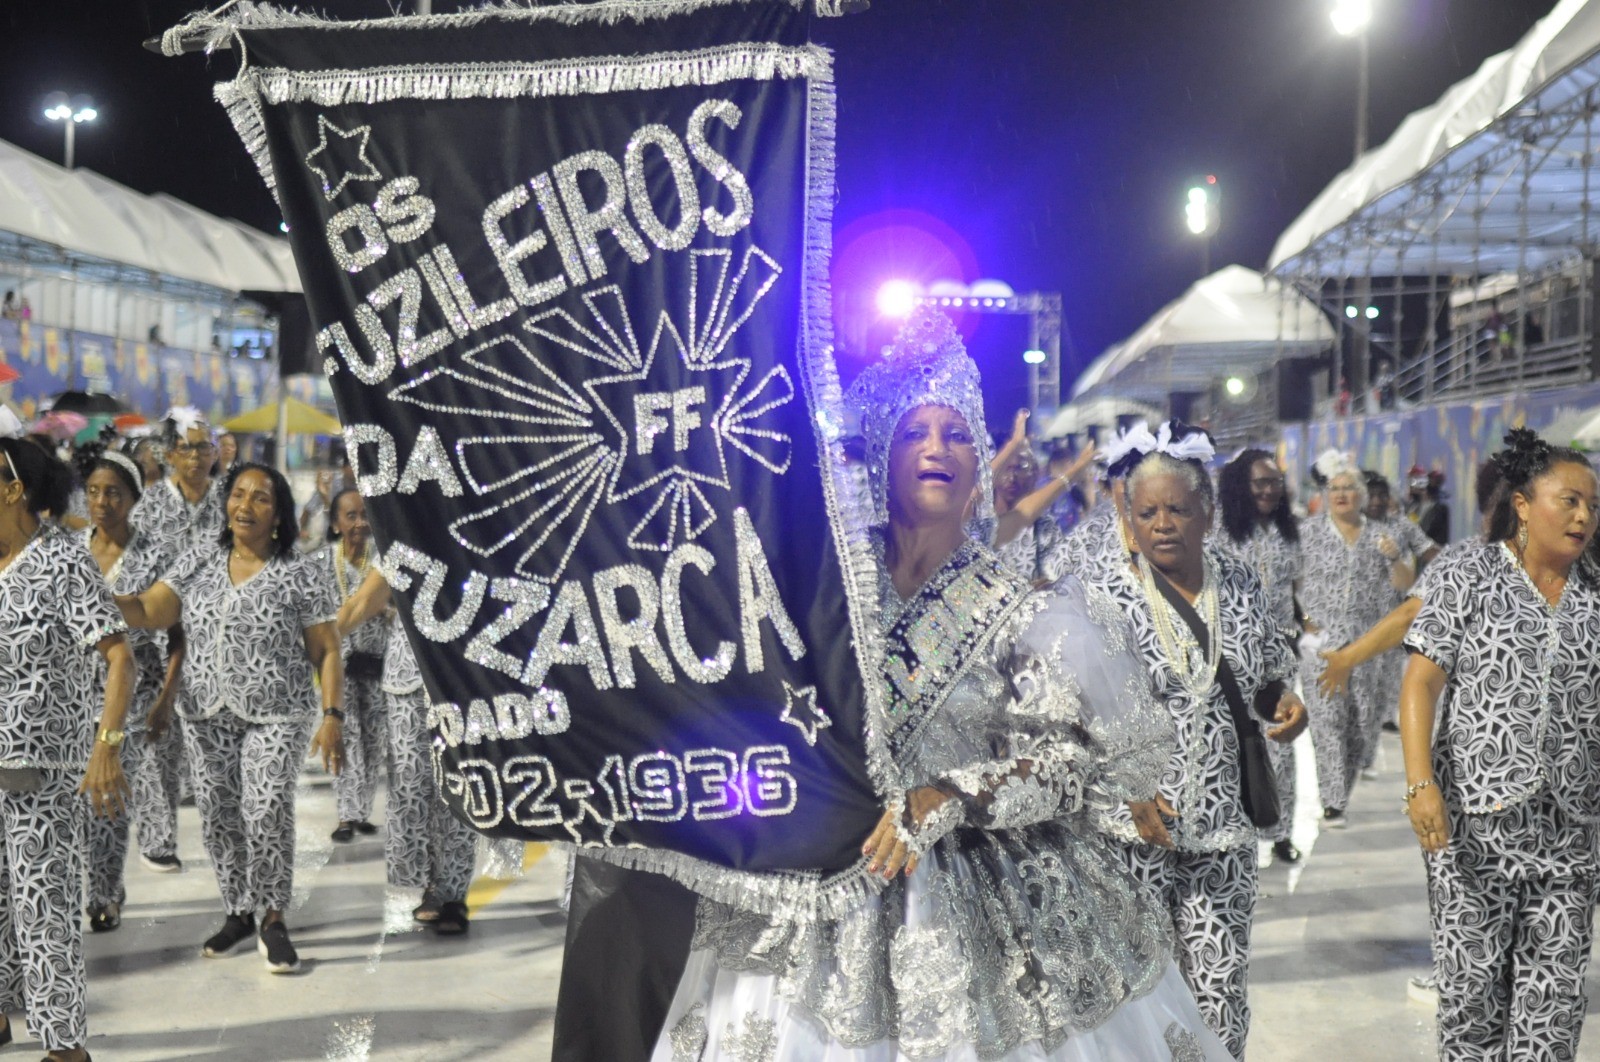 Grupo Os Fuzileiros da Fuzarca ganha exposição em comemoração aos 88 anos no carnaval maranhense